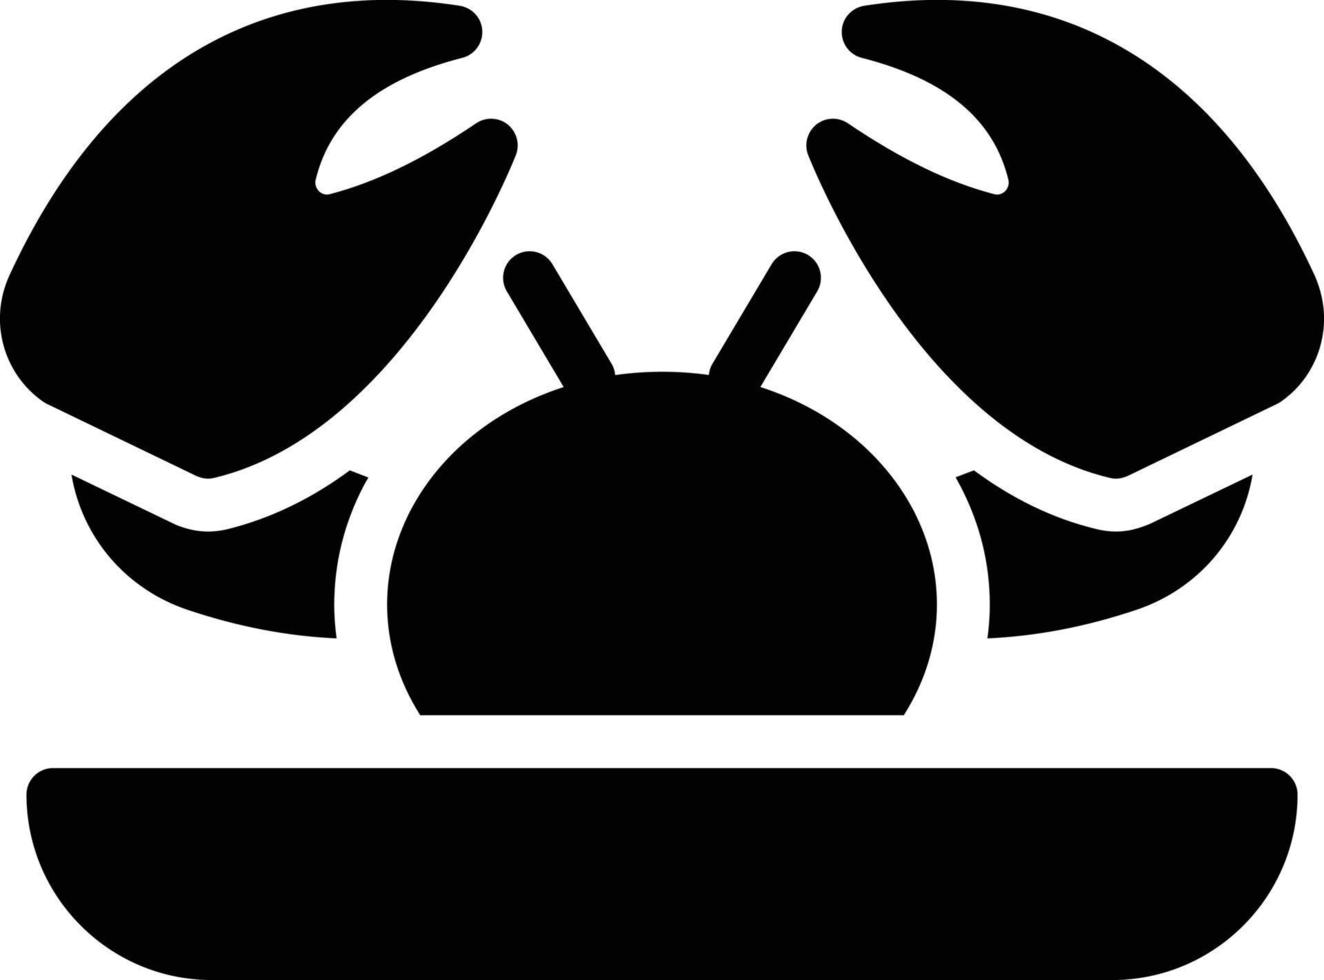 Krabbenvektorillustration auf einem Hintergrund. Premium-Qualitätssymbole. Vektorsymbole für Konzept und Grafikdesign. vektor